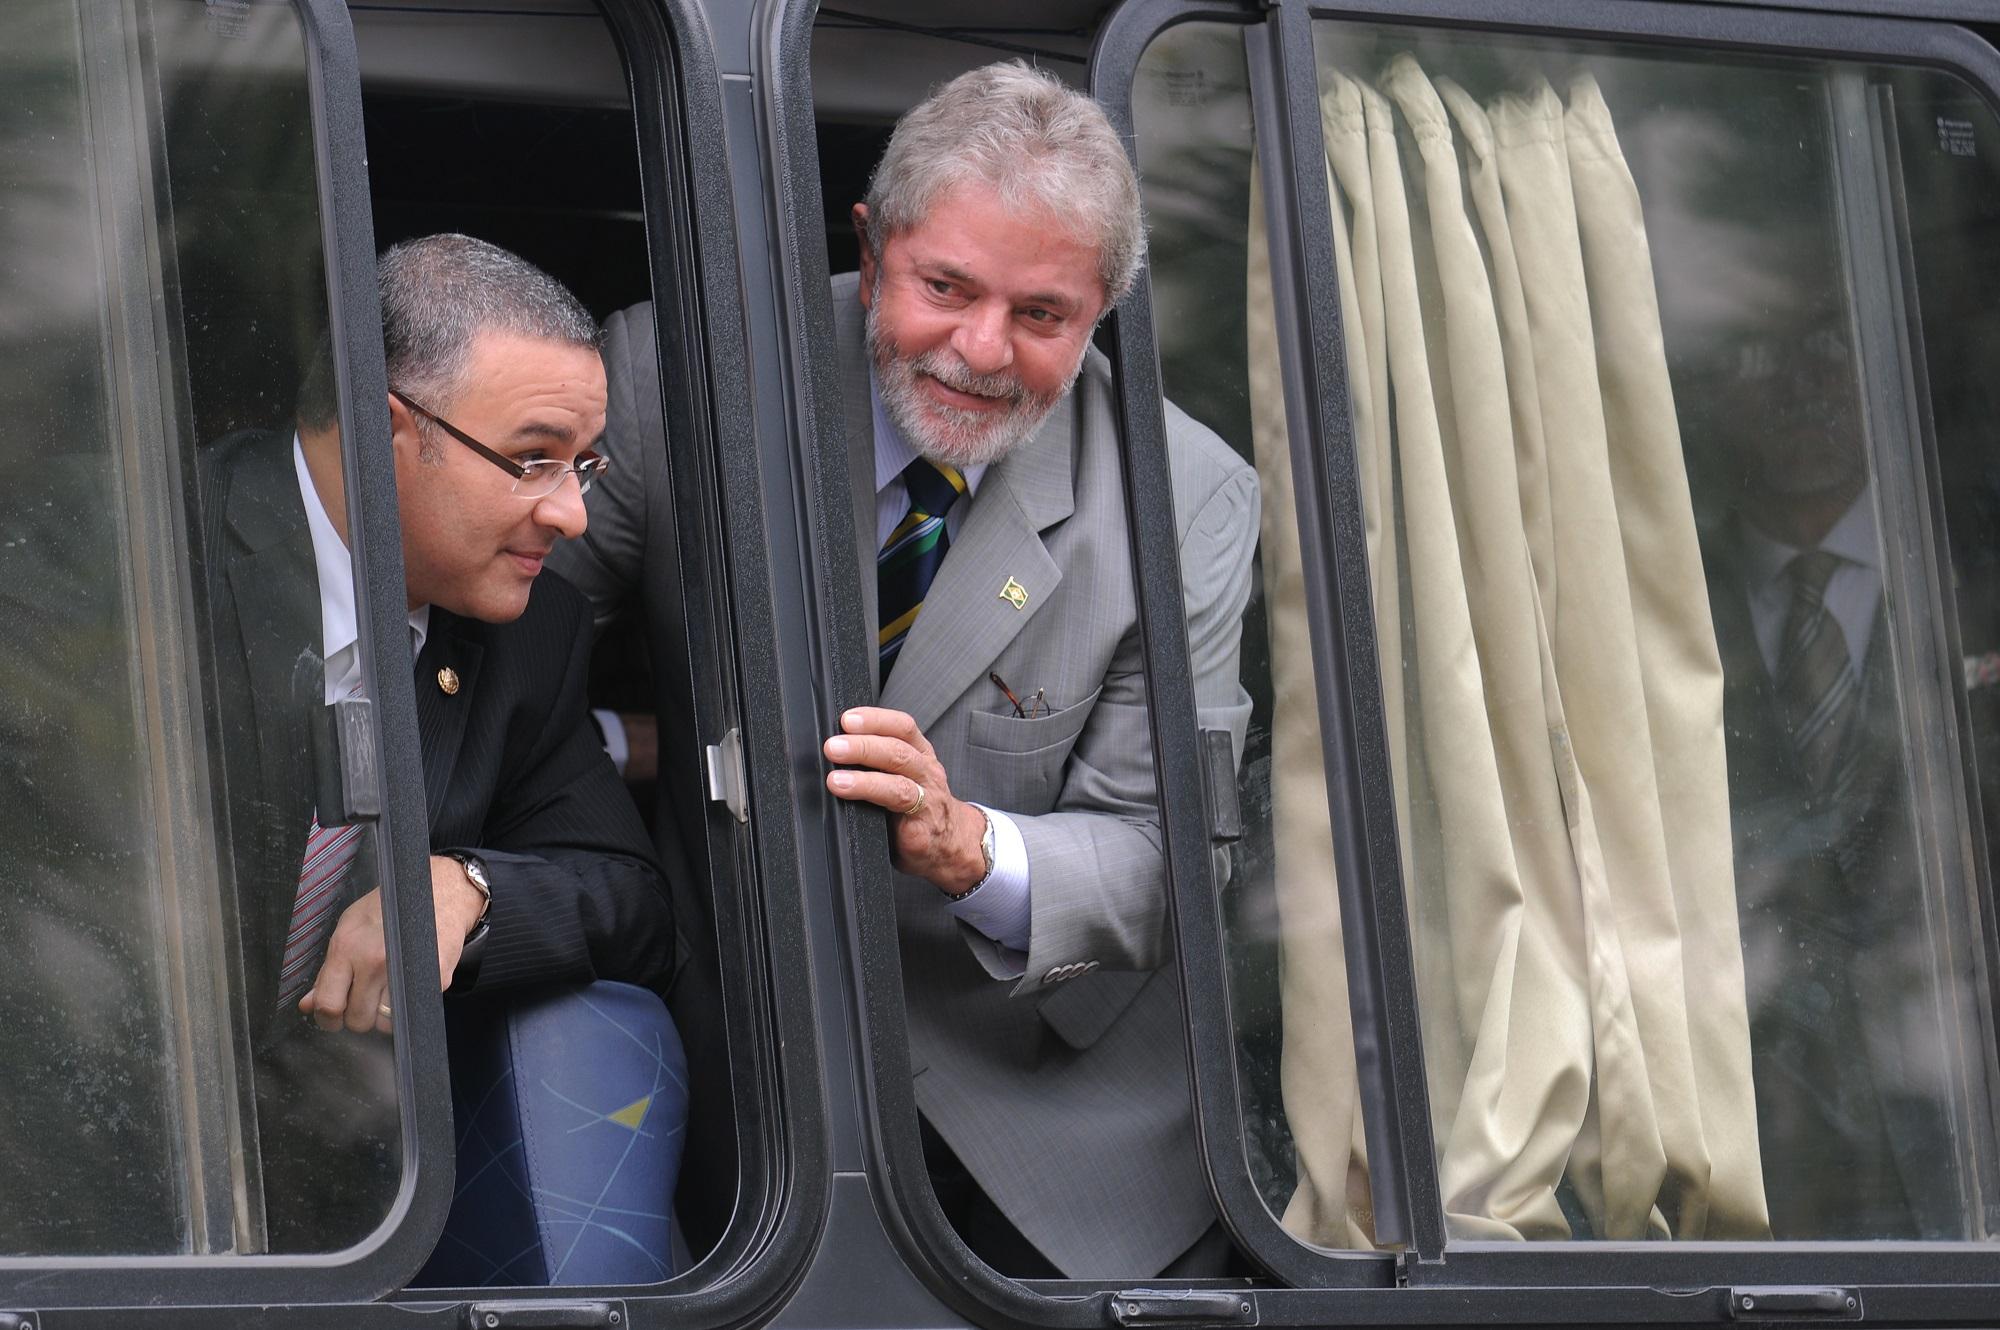 El expresidente brasileño Lula da Silva y el expresidente salvadoreño Mauricio Funes, fotografiados durante la visita de Estado que el mandatario de Brasil hizo a El Salvador en febrero de 2010. Foto José Cabezas (AFP).